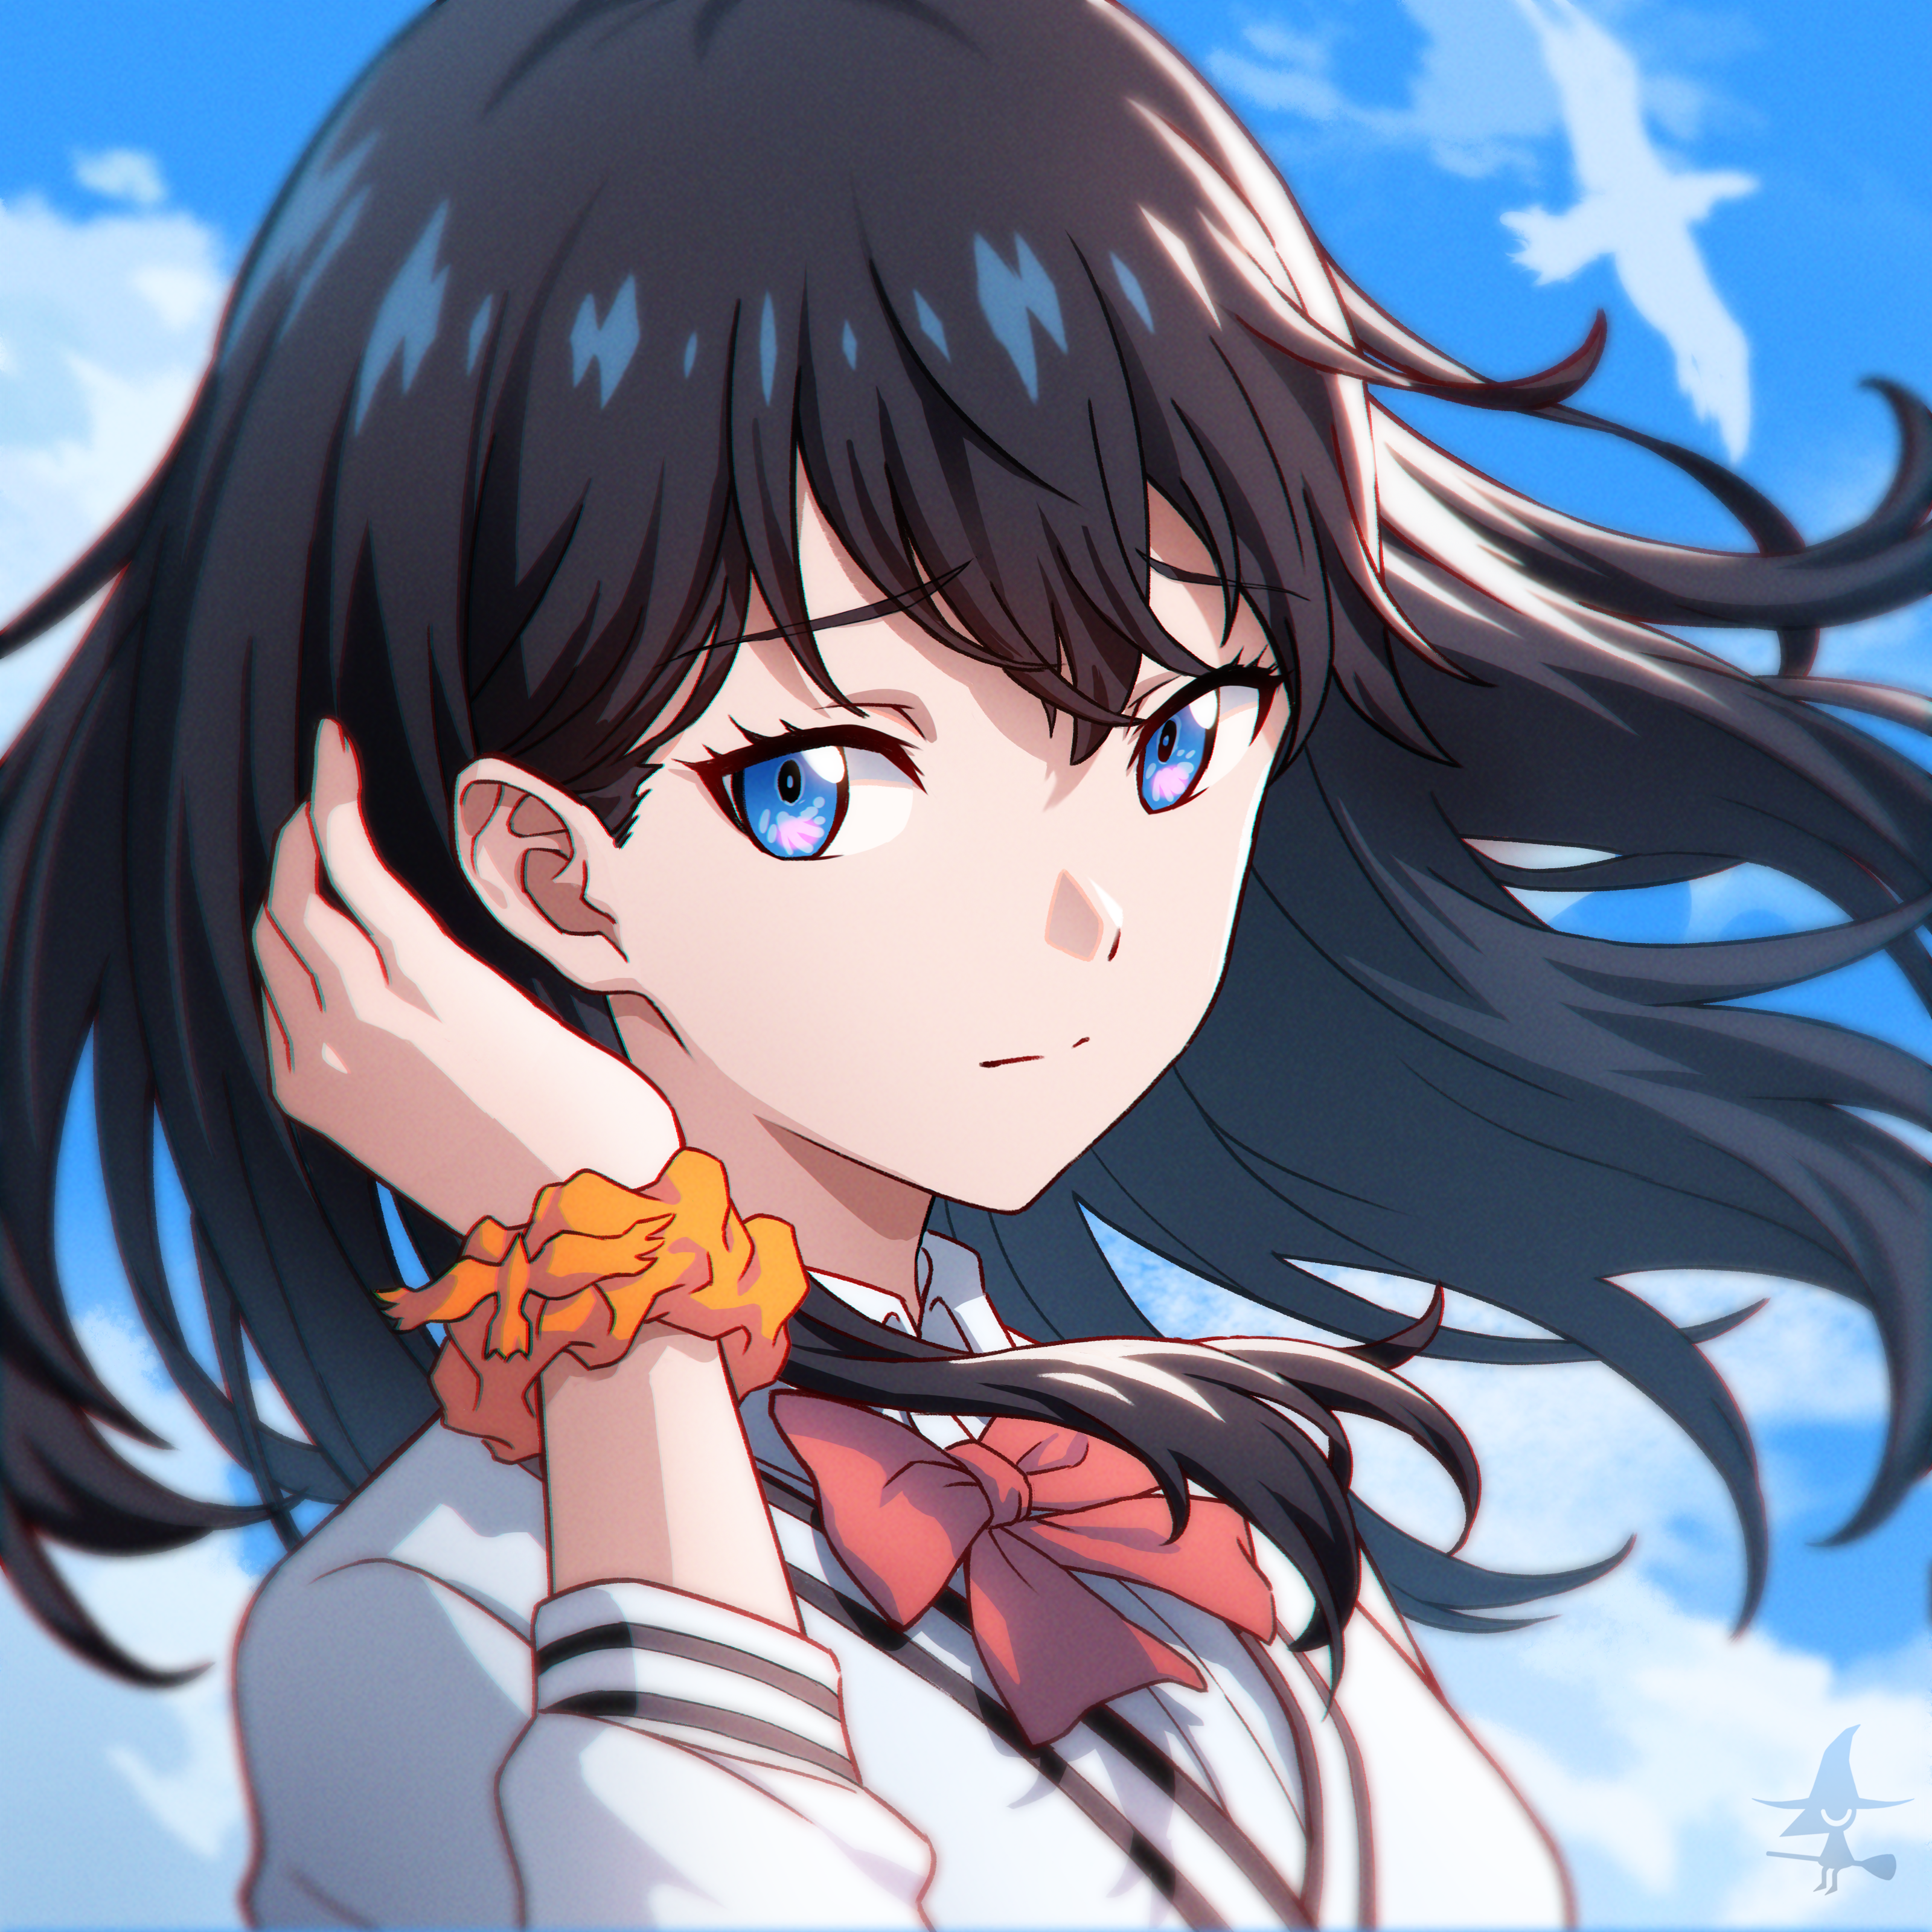 Anime 3200x3200 anime anime girls SSSS.GRIDMAN Takarada Rikka long hair dark hair solo artwork digital art fan art